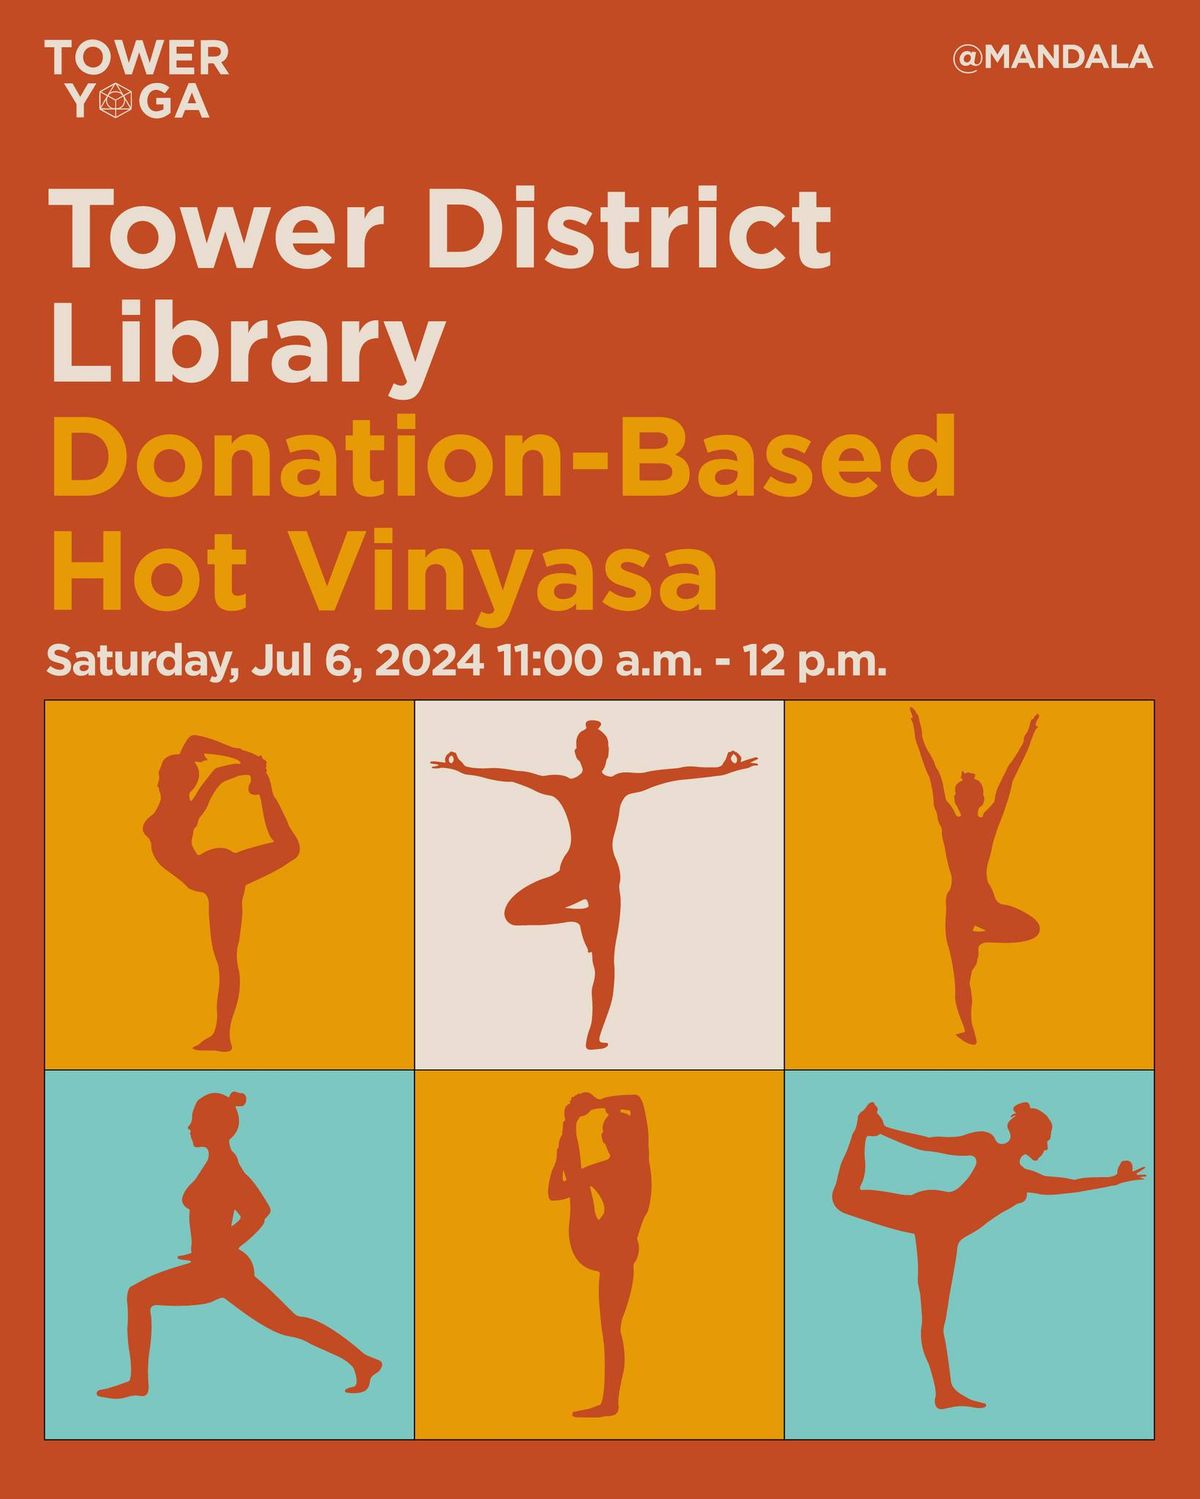 Tower District Library Donation-Based Hot Vinyasa